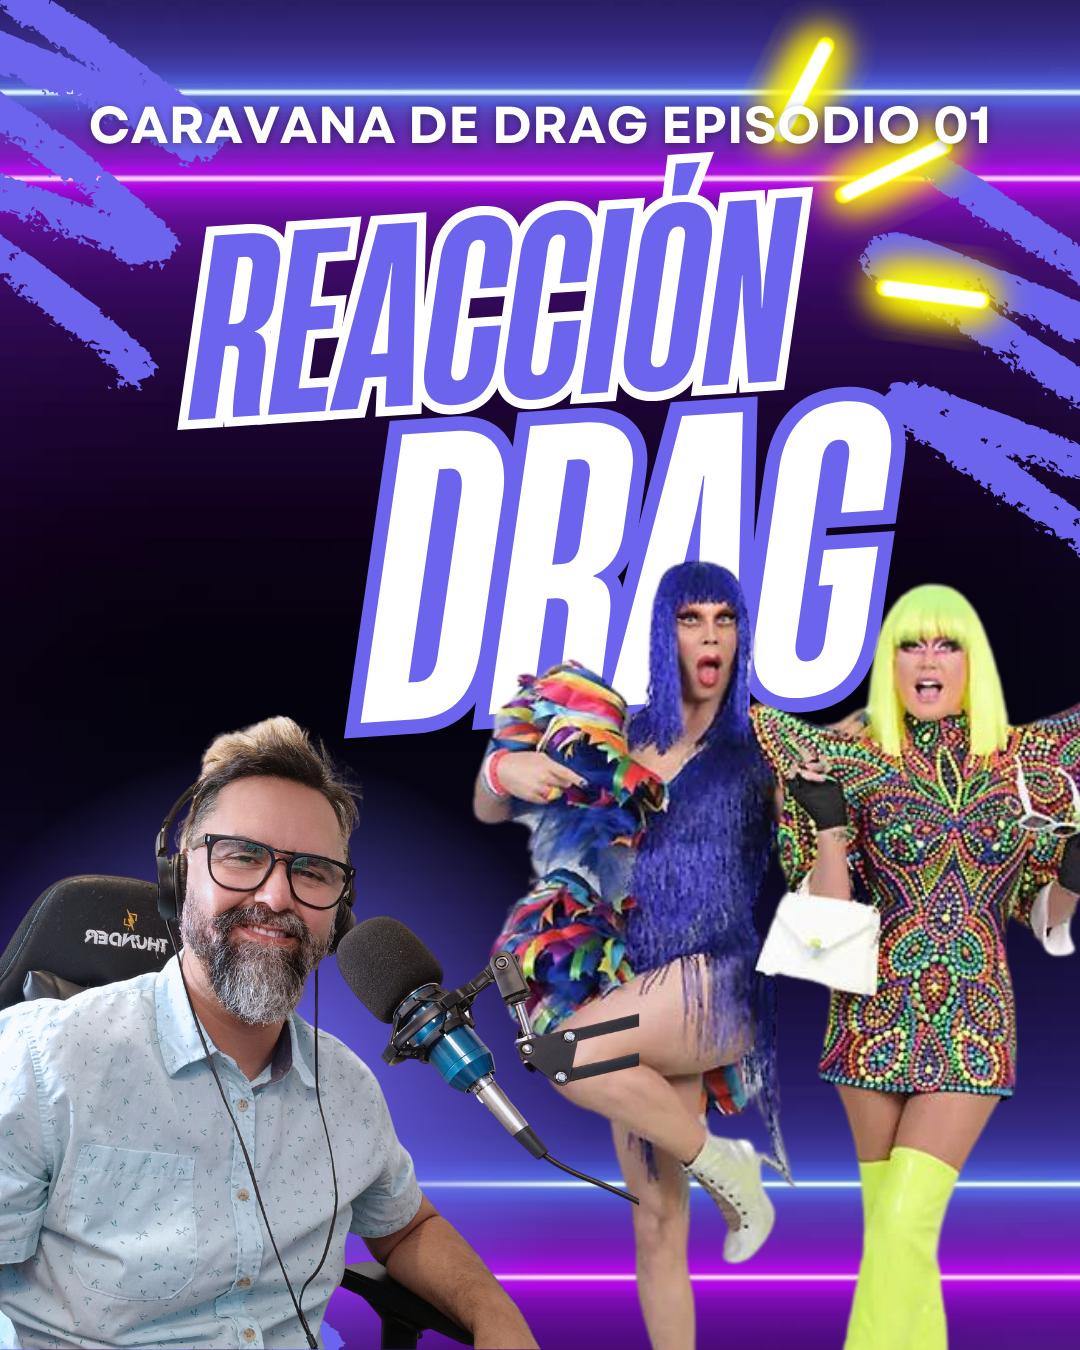 Reacción Drag - Episodio 01 "caravana Drag"